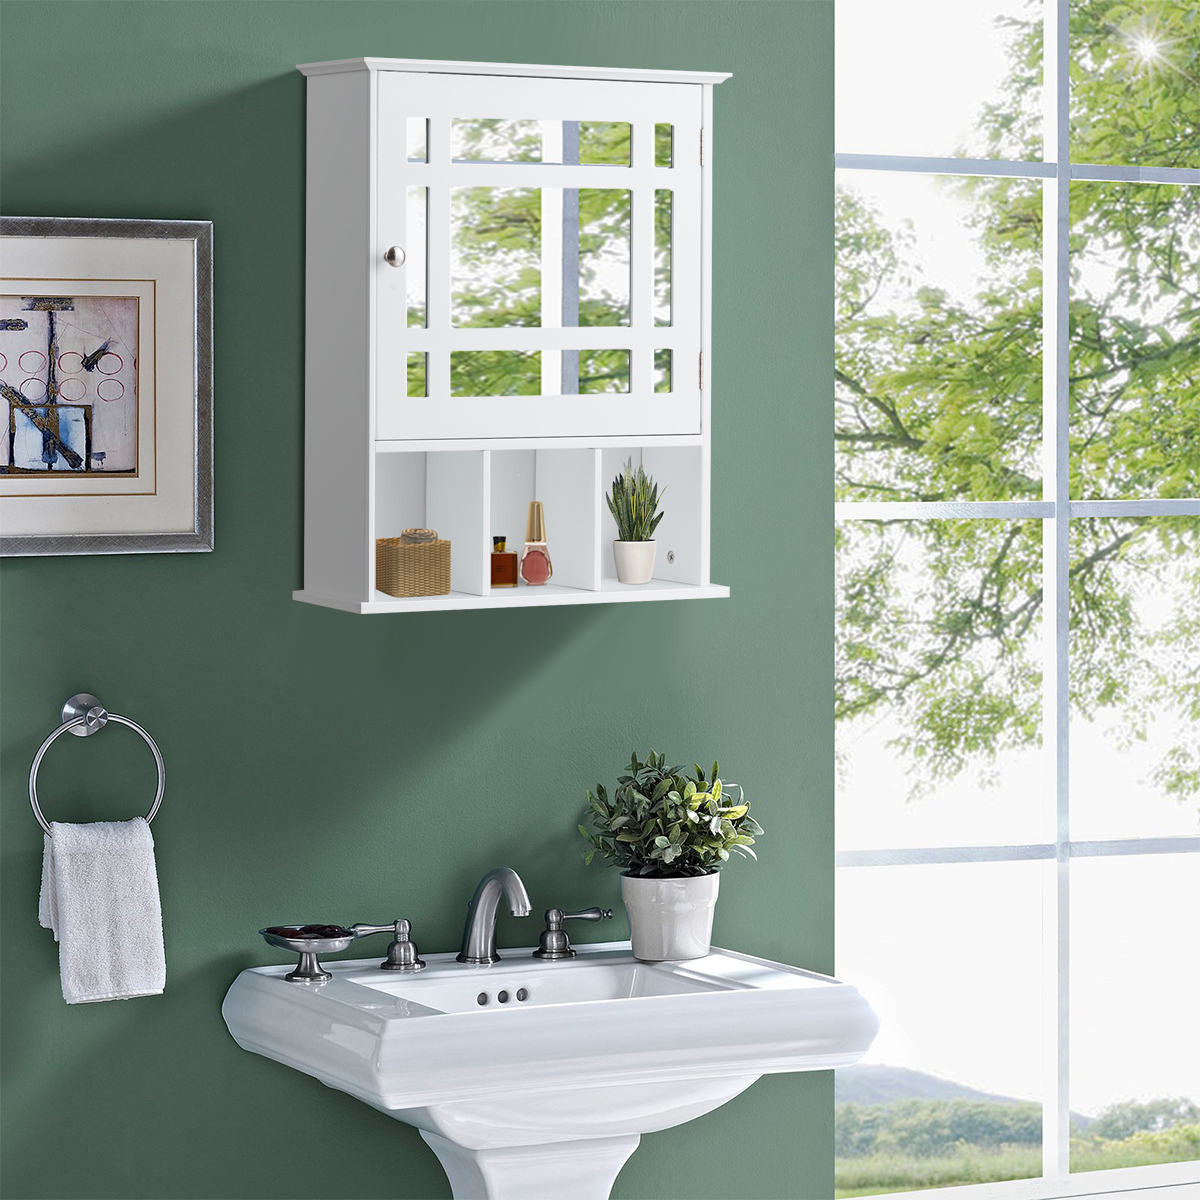 Hängeschrank mit Verstellbarem Einlegeboden & Offenen Fächern Spiegelschrank 50 x 16 x 61 cm Weiß von Costway